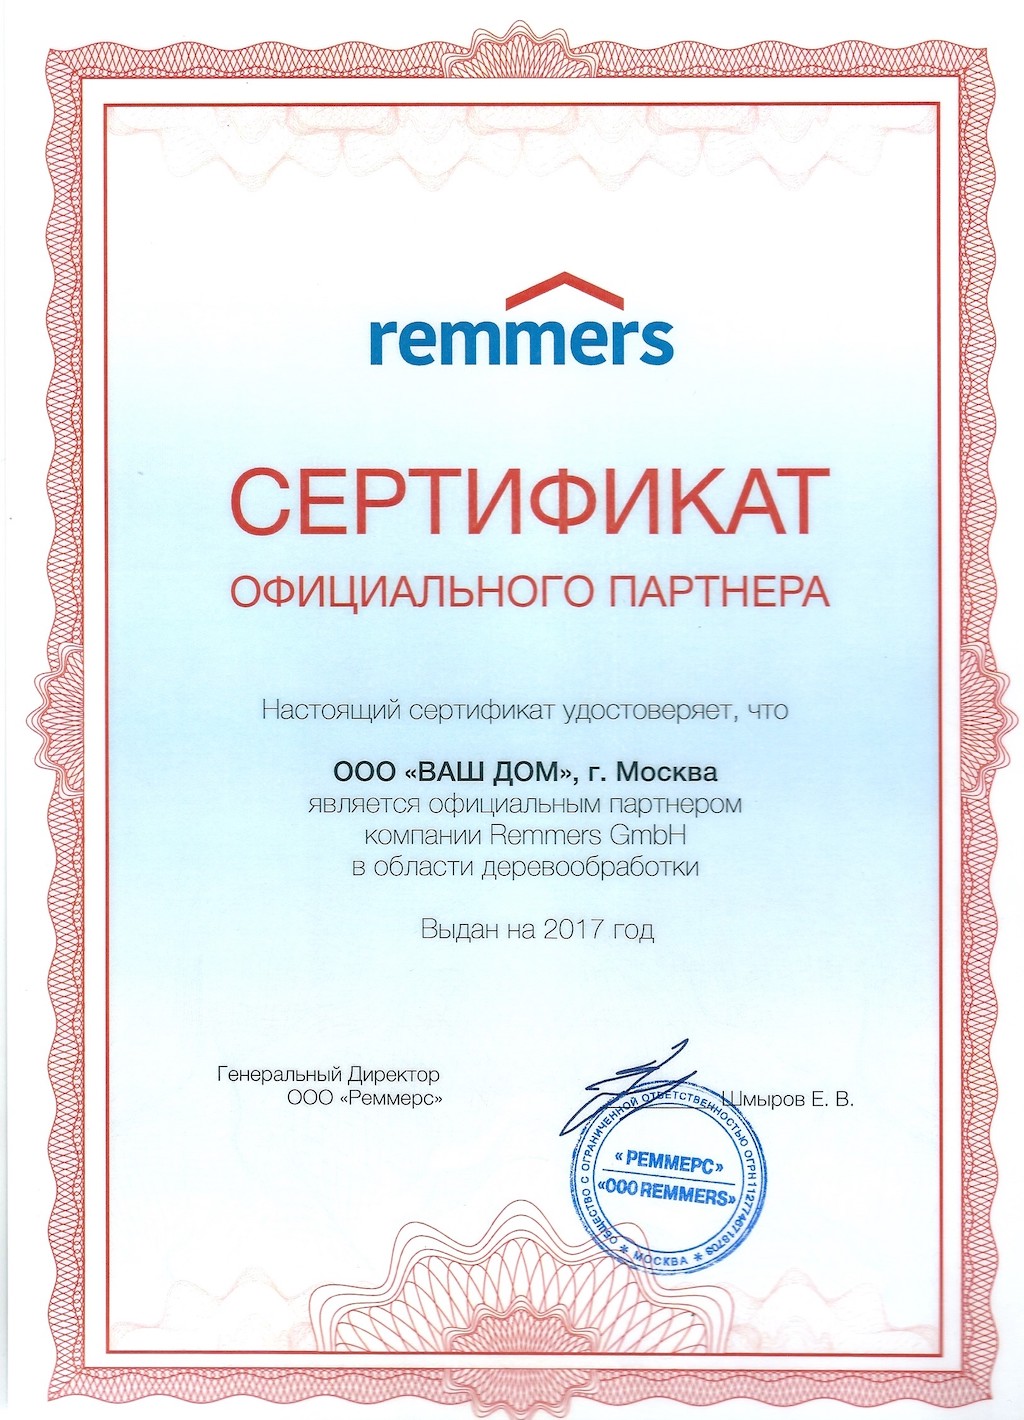 Сертификат официального партнёра remmers компании Ваш Дом